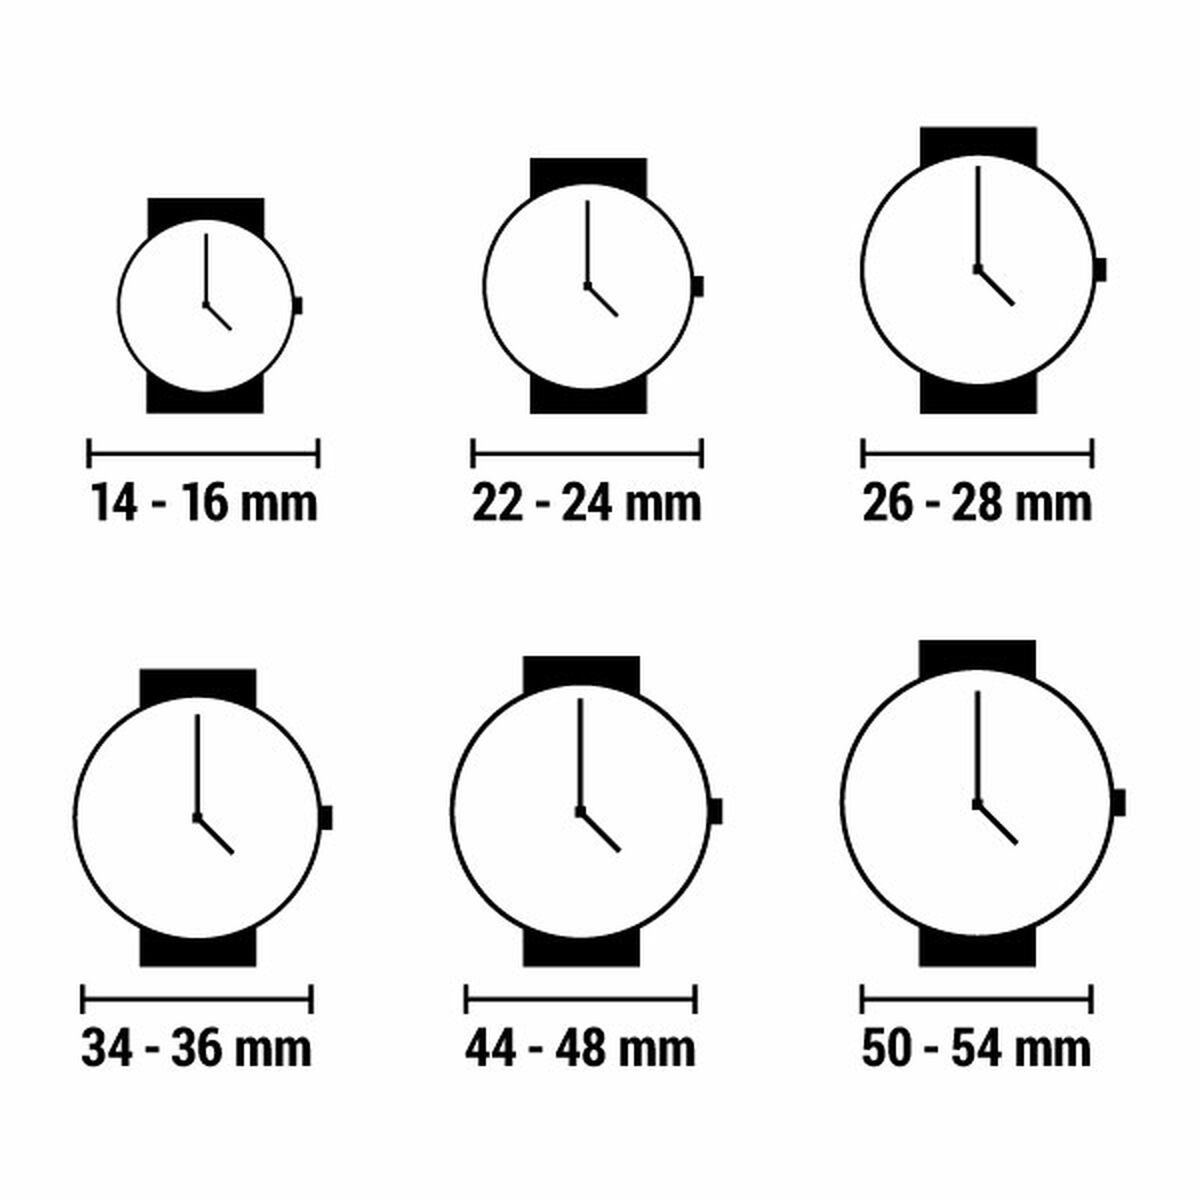 Horloge Dames Skagen AMBERLINE (Ø 28 mm)